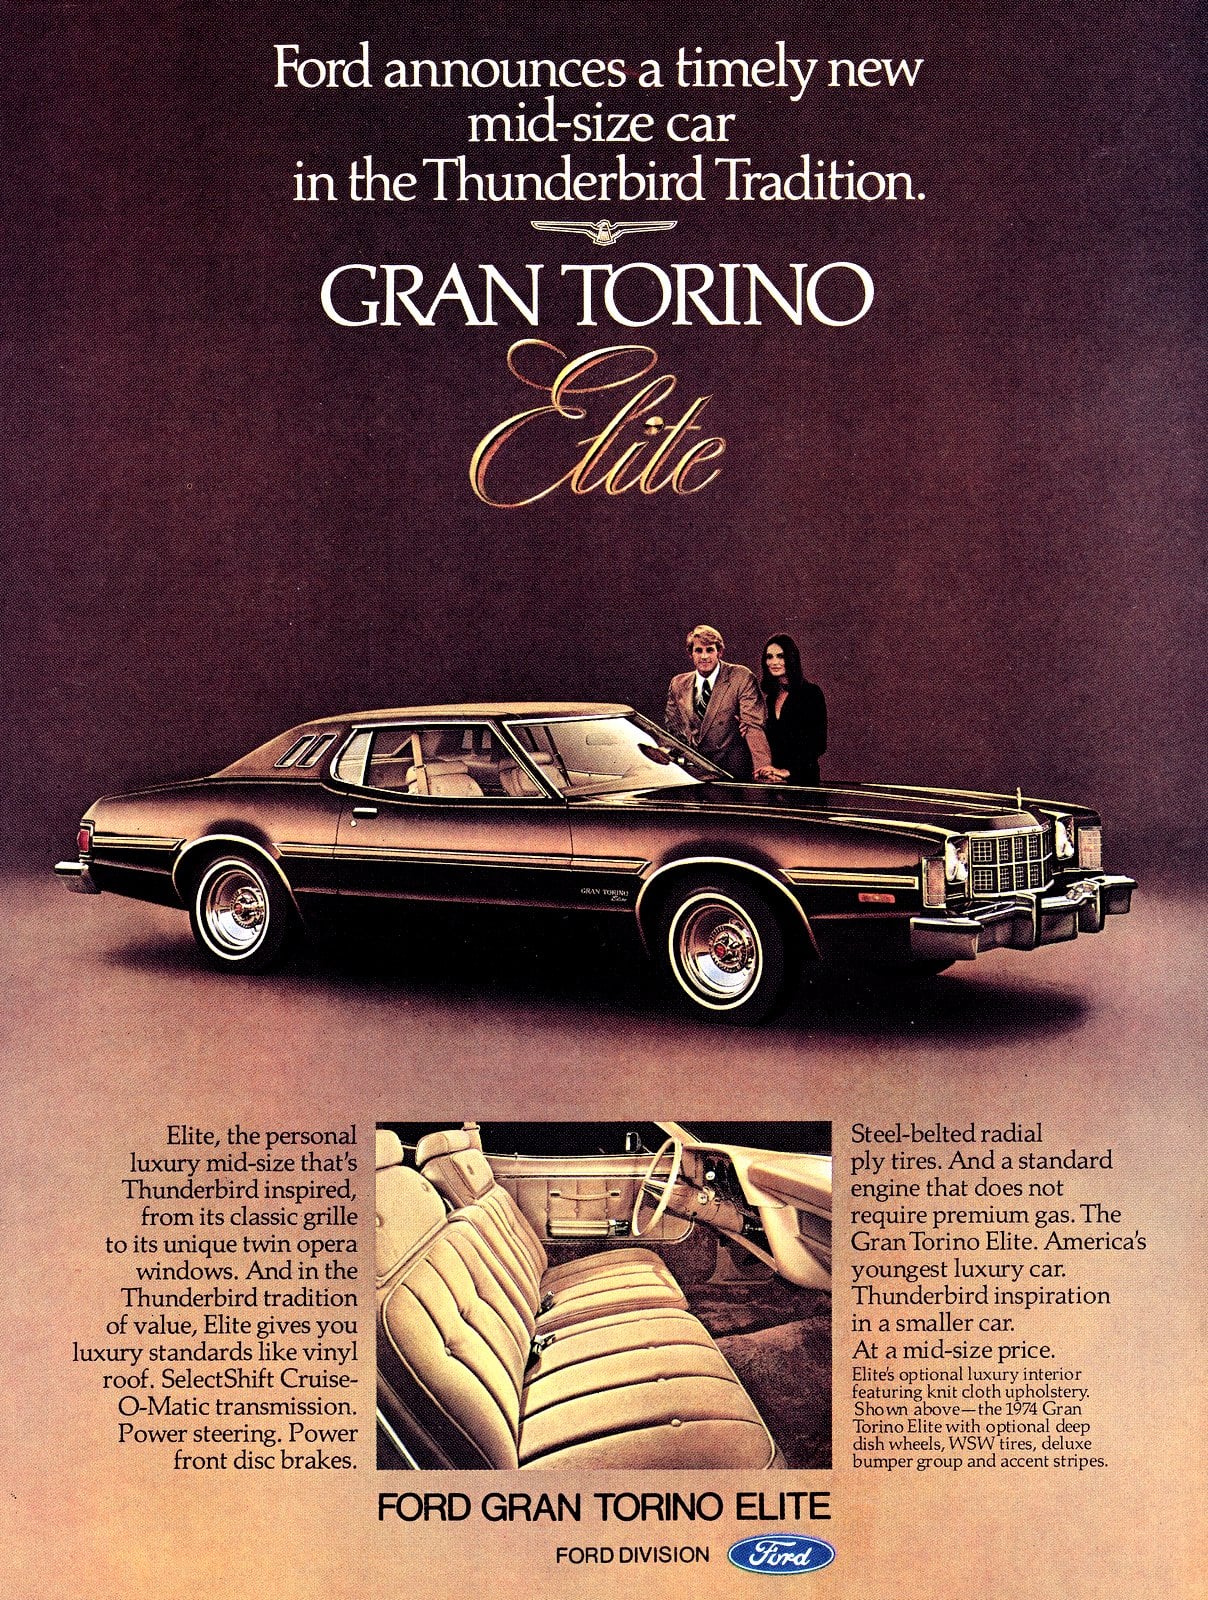 Ford Gran Torino Elite Wallpapers